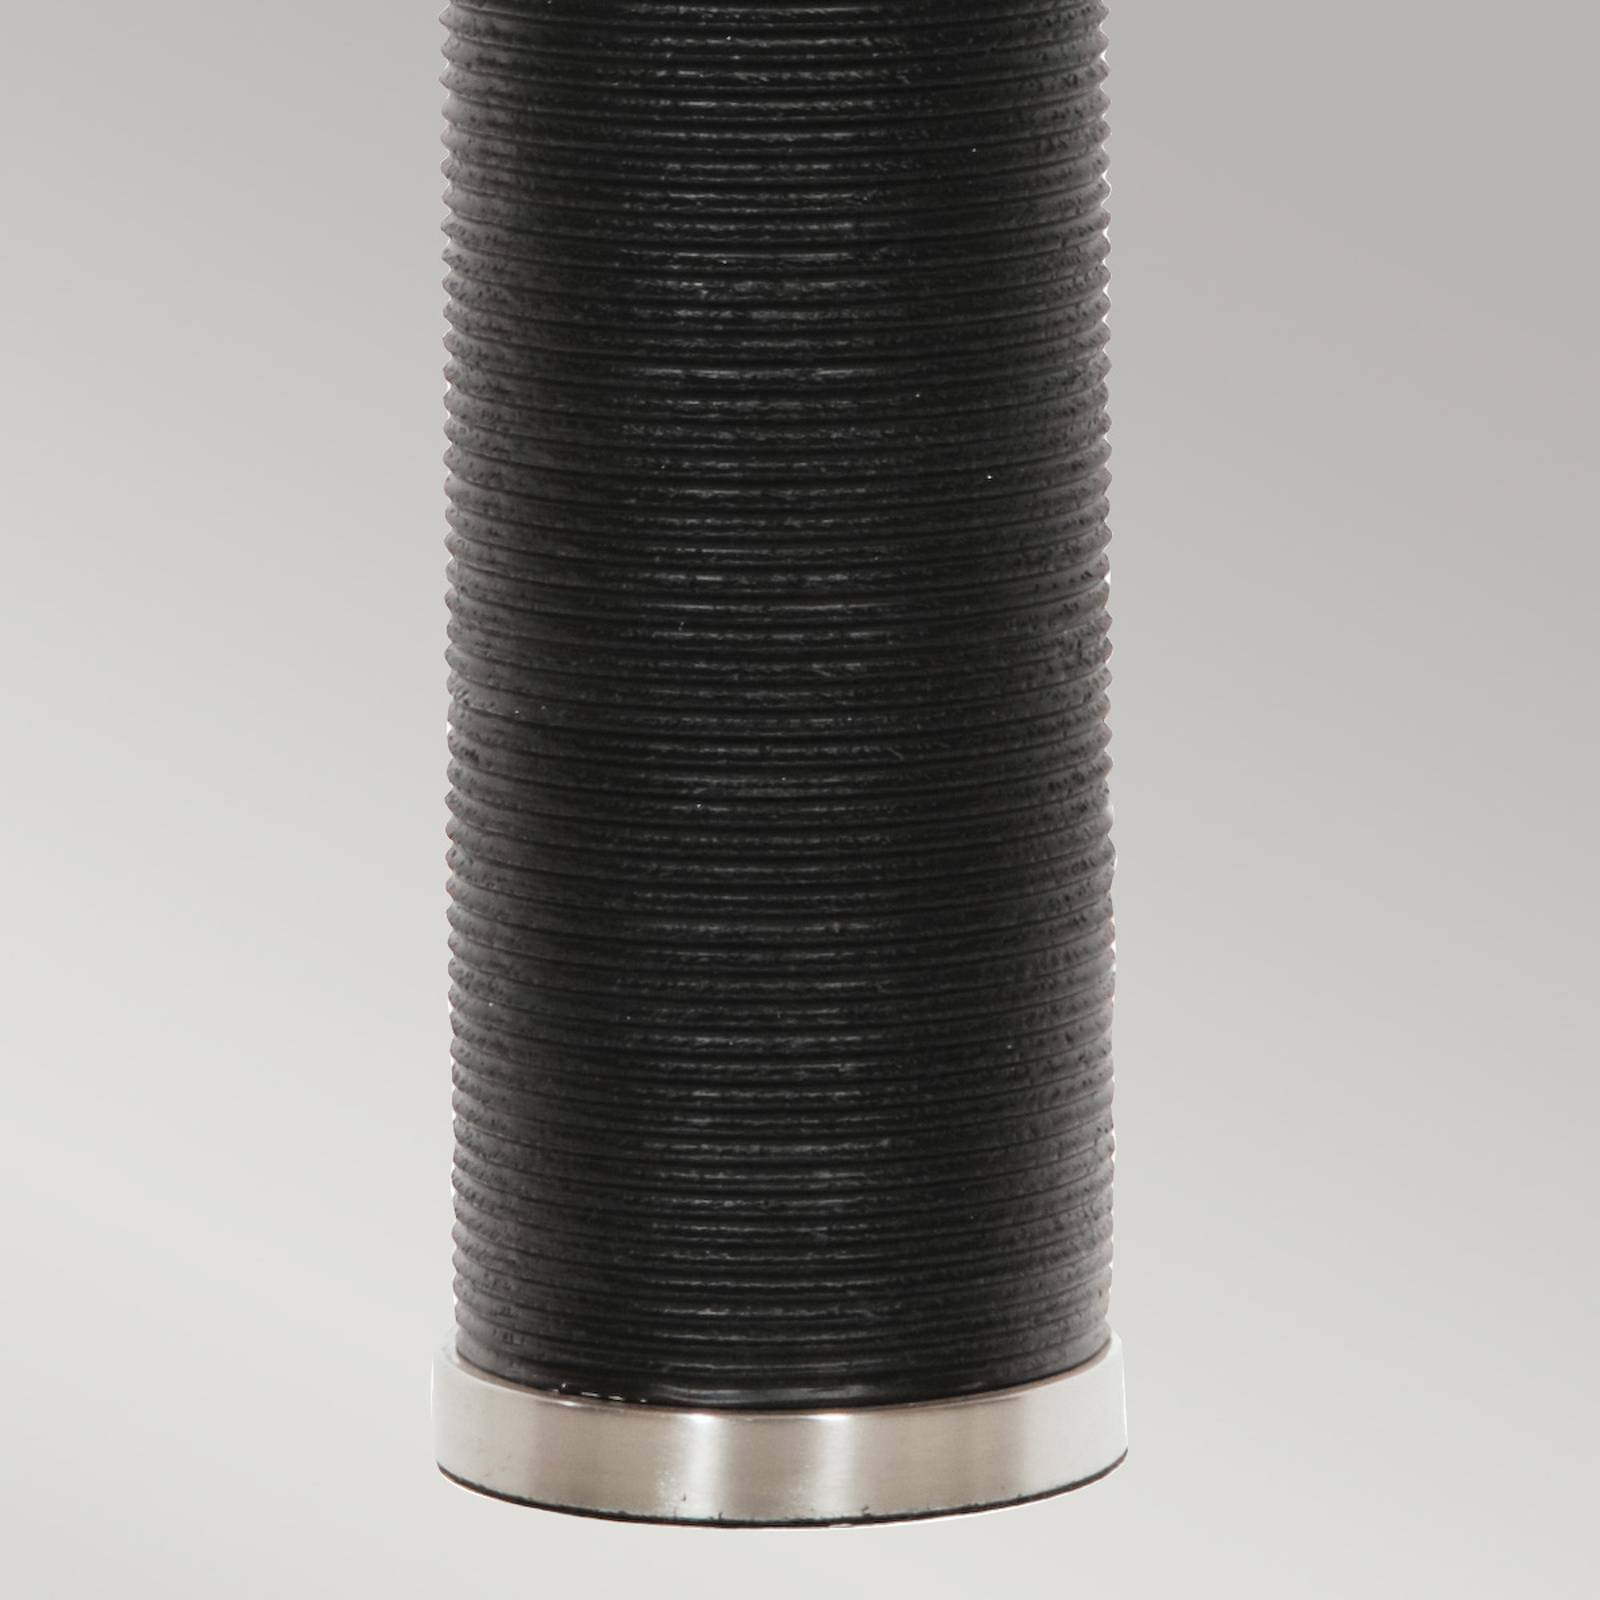 Tekstil bordlampe Ripple svart fot / hvit skjerm